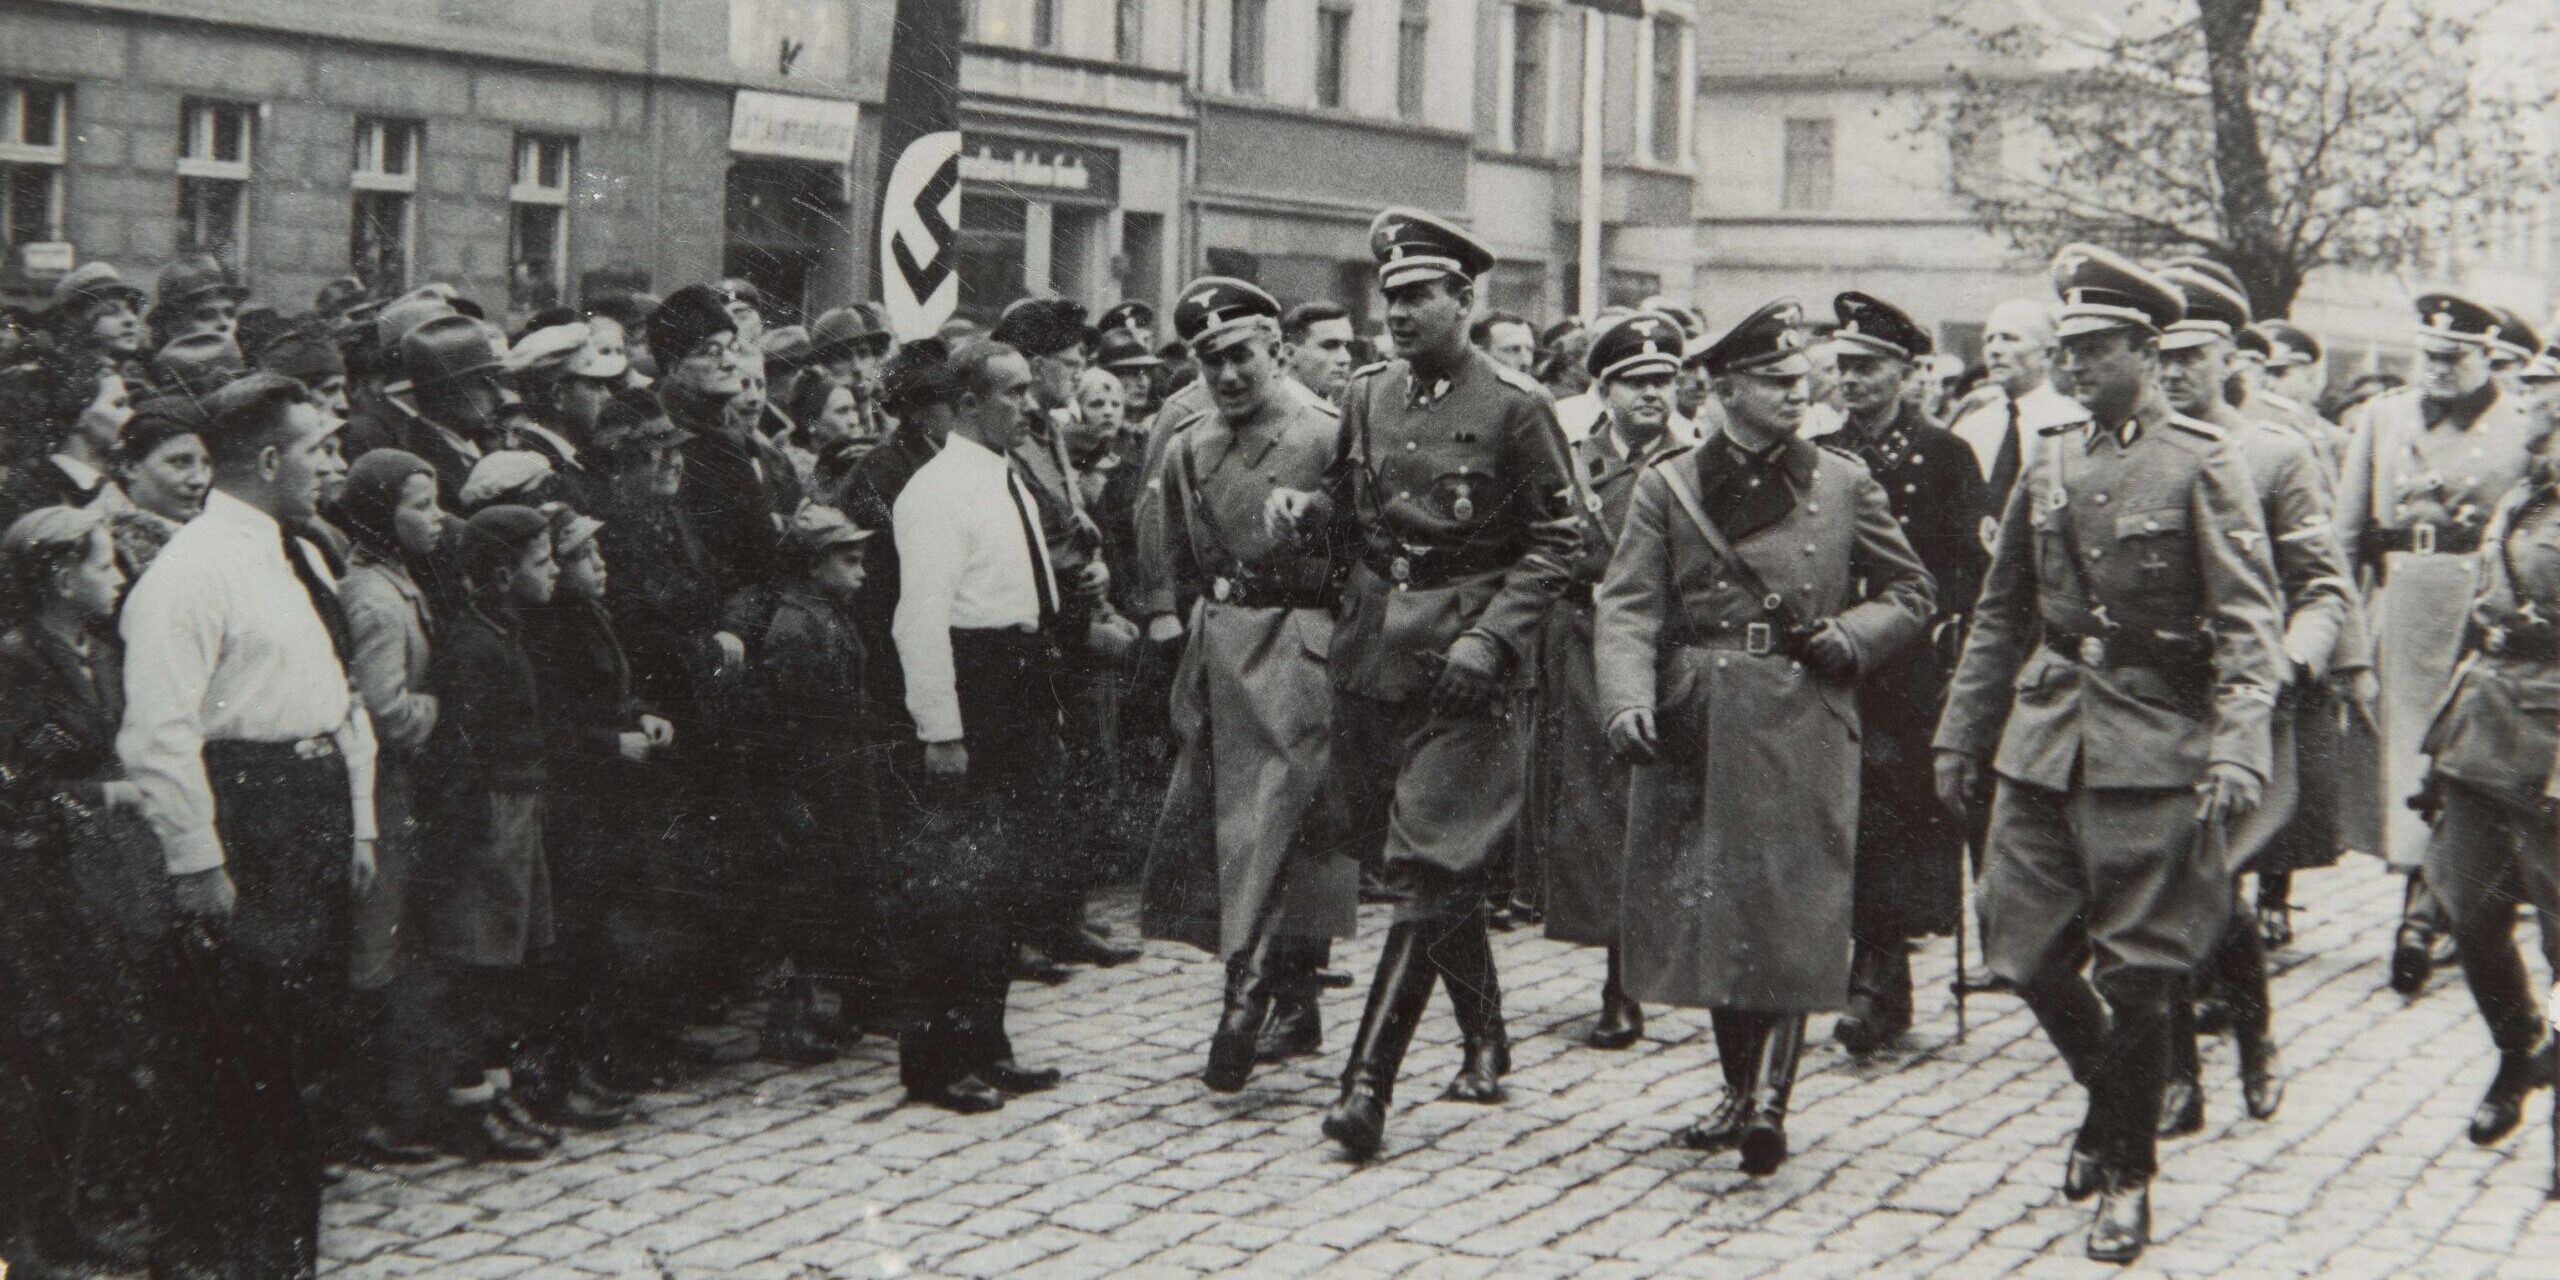 Fotografia przedstawia grupę oficerów niemieckich z II wojny światowej maszerujących przed tłumem ludzi.